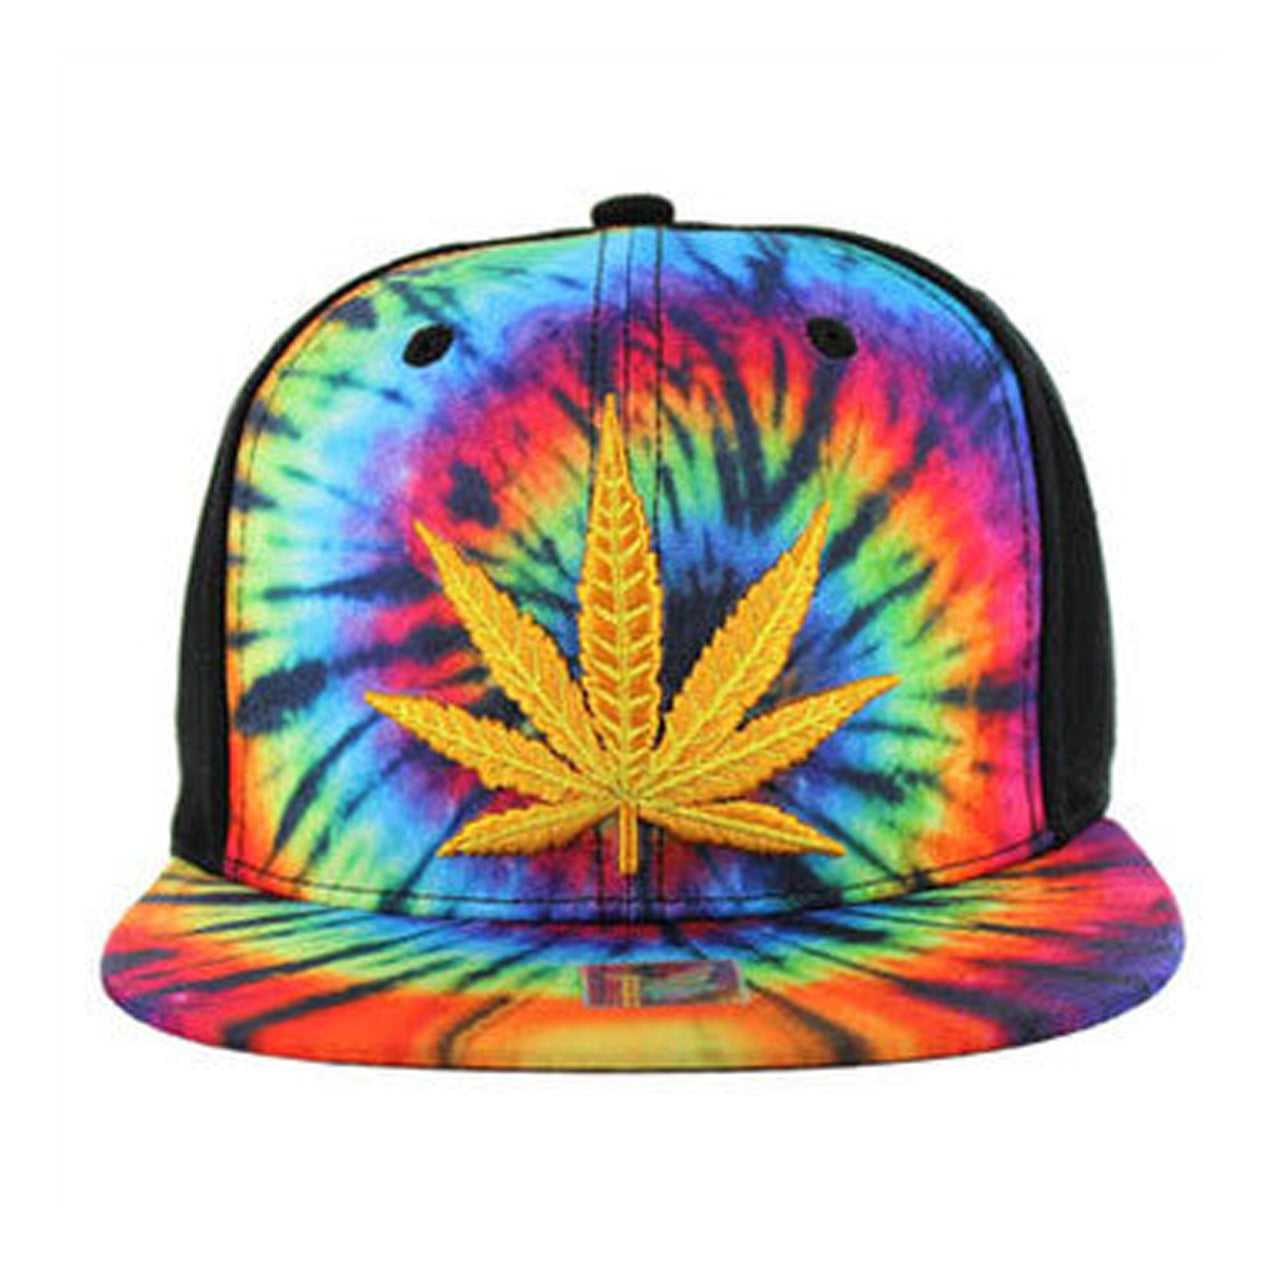 SM003 Marijuana Snapback Hat - Tie Dye (Pack of 12)